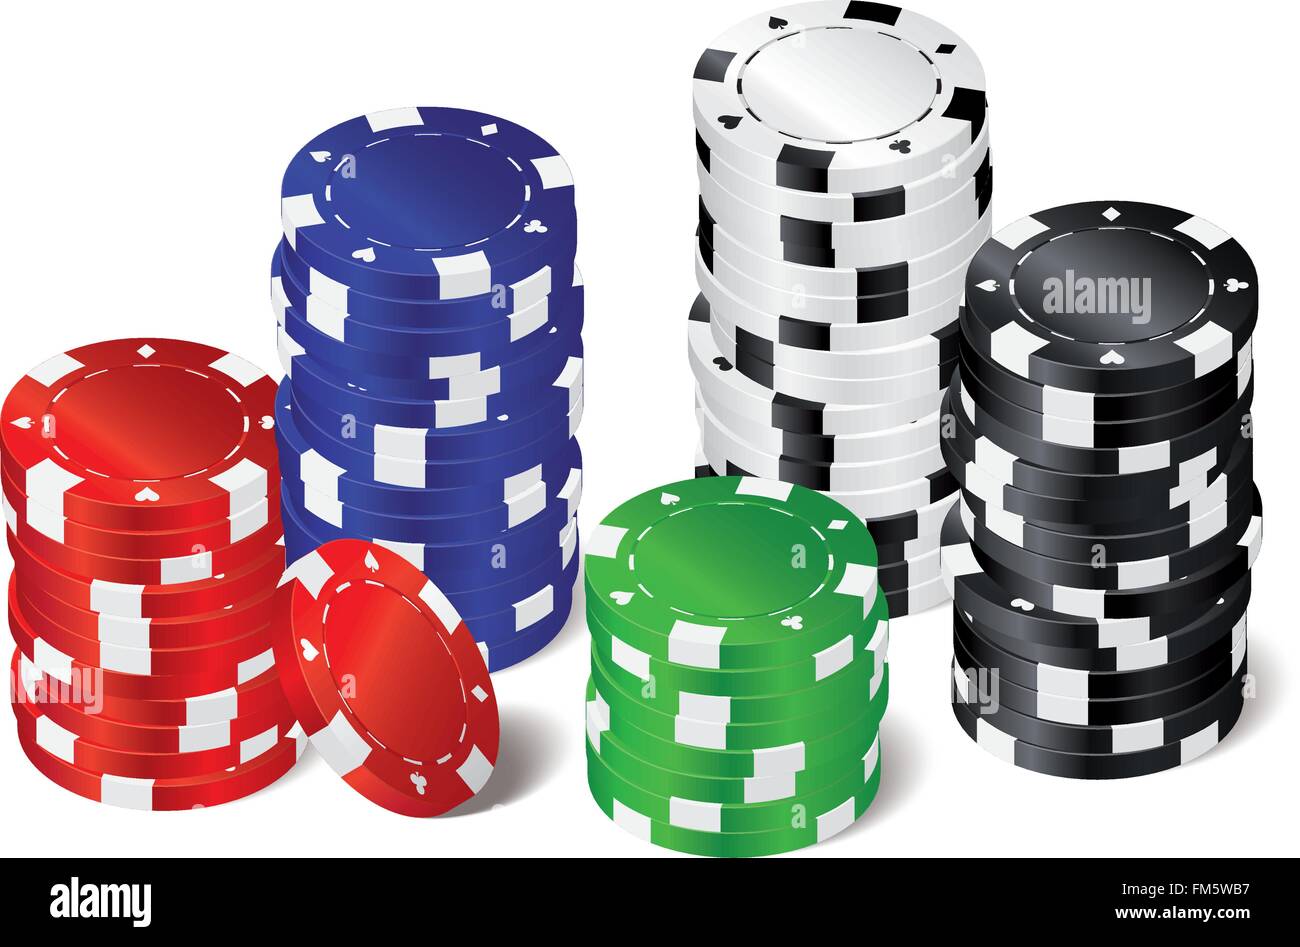 5 pile di colore rosso, verde, blu, bianco e nero poker chips con carta da gioco simboli Illustrazione Vettoriale